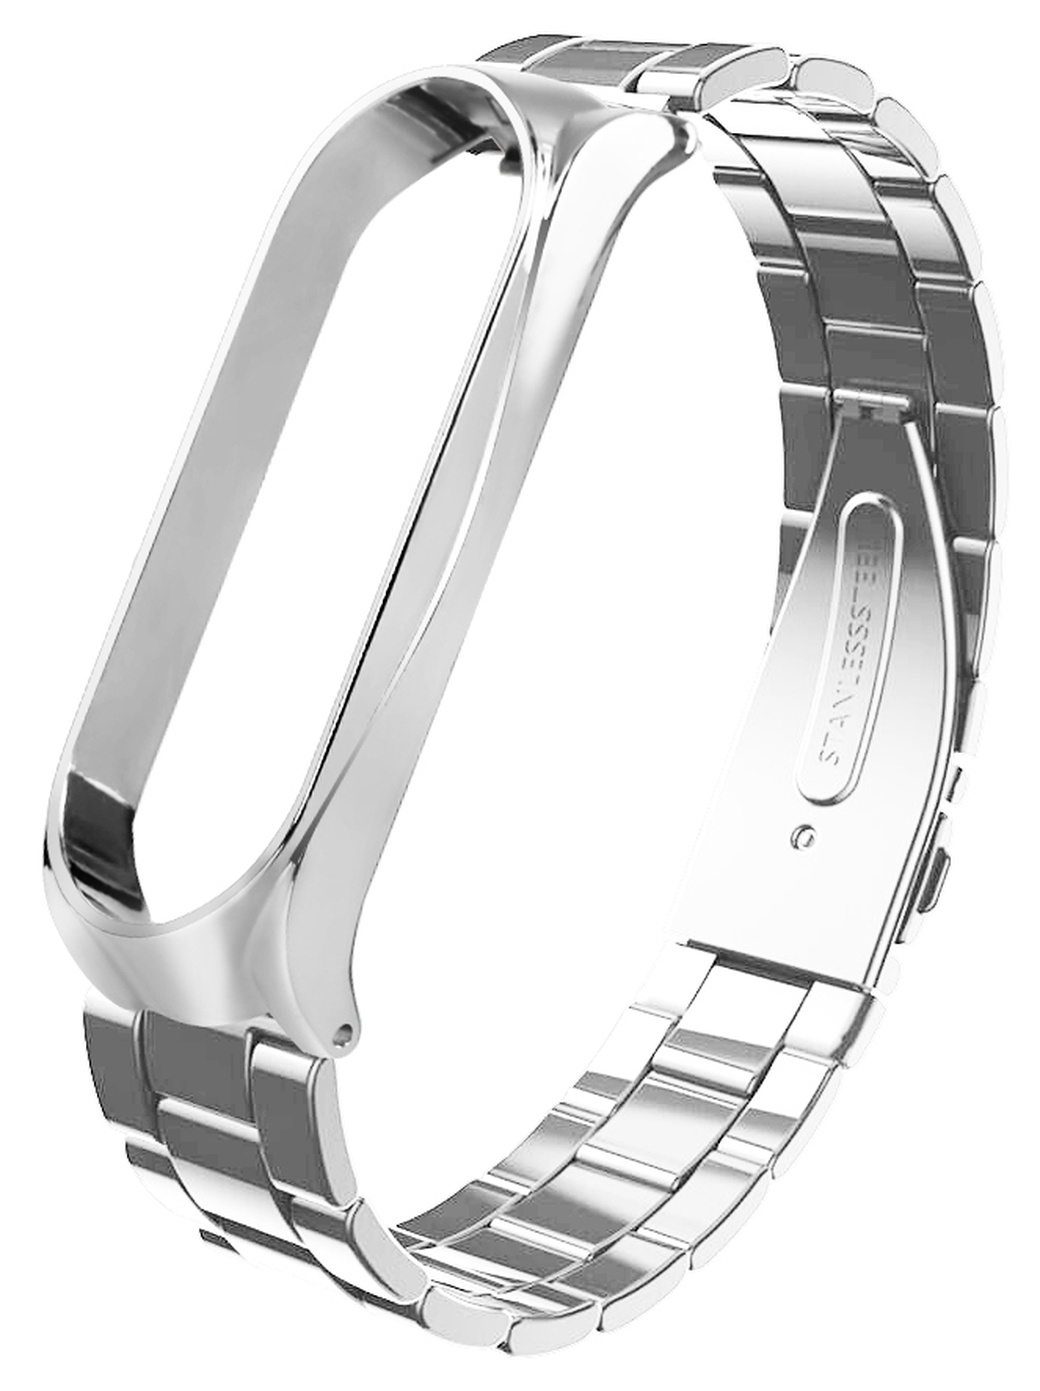 Ремешок для браслета Bakeey для Xiaomi Mi Band 4 нержавеющая сталь, серебро фото